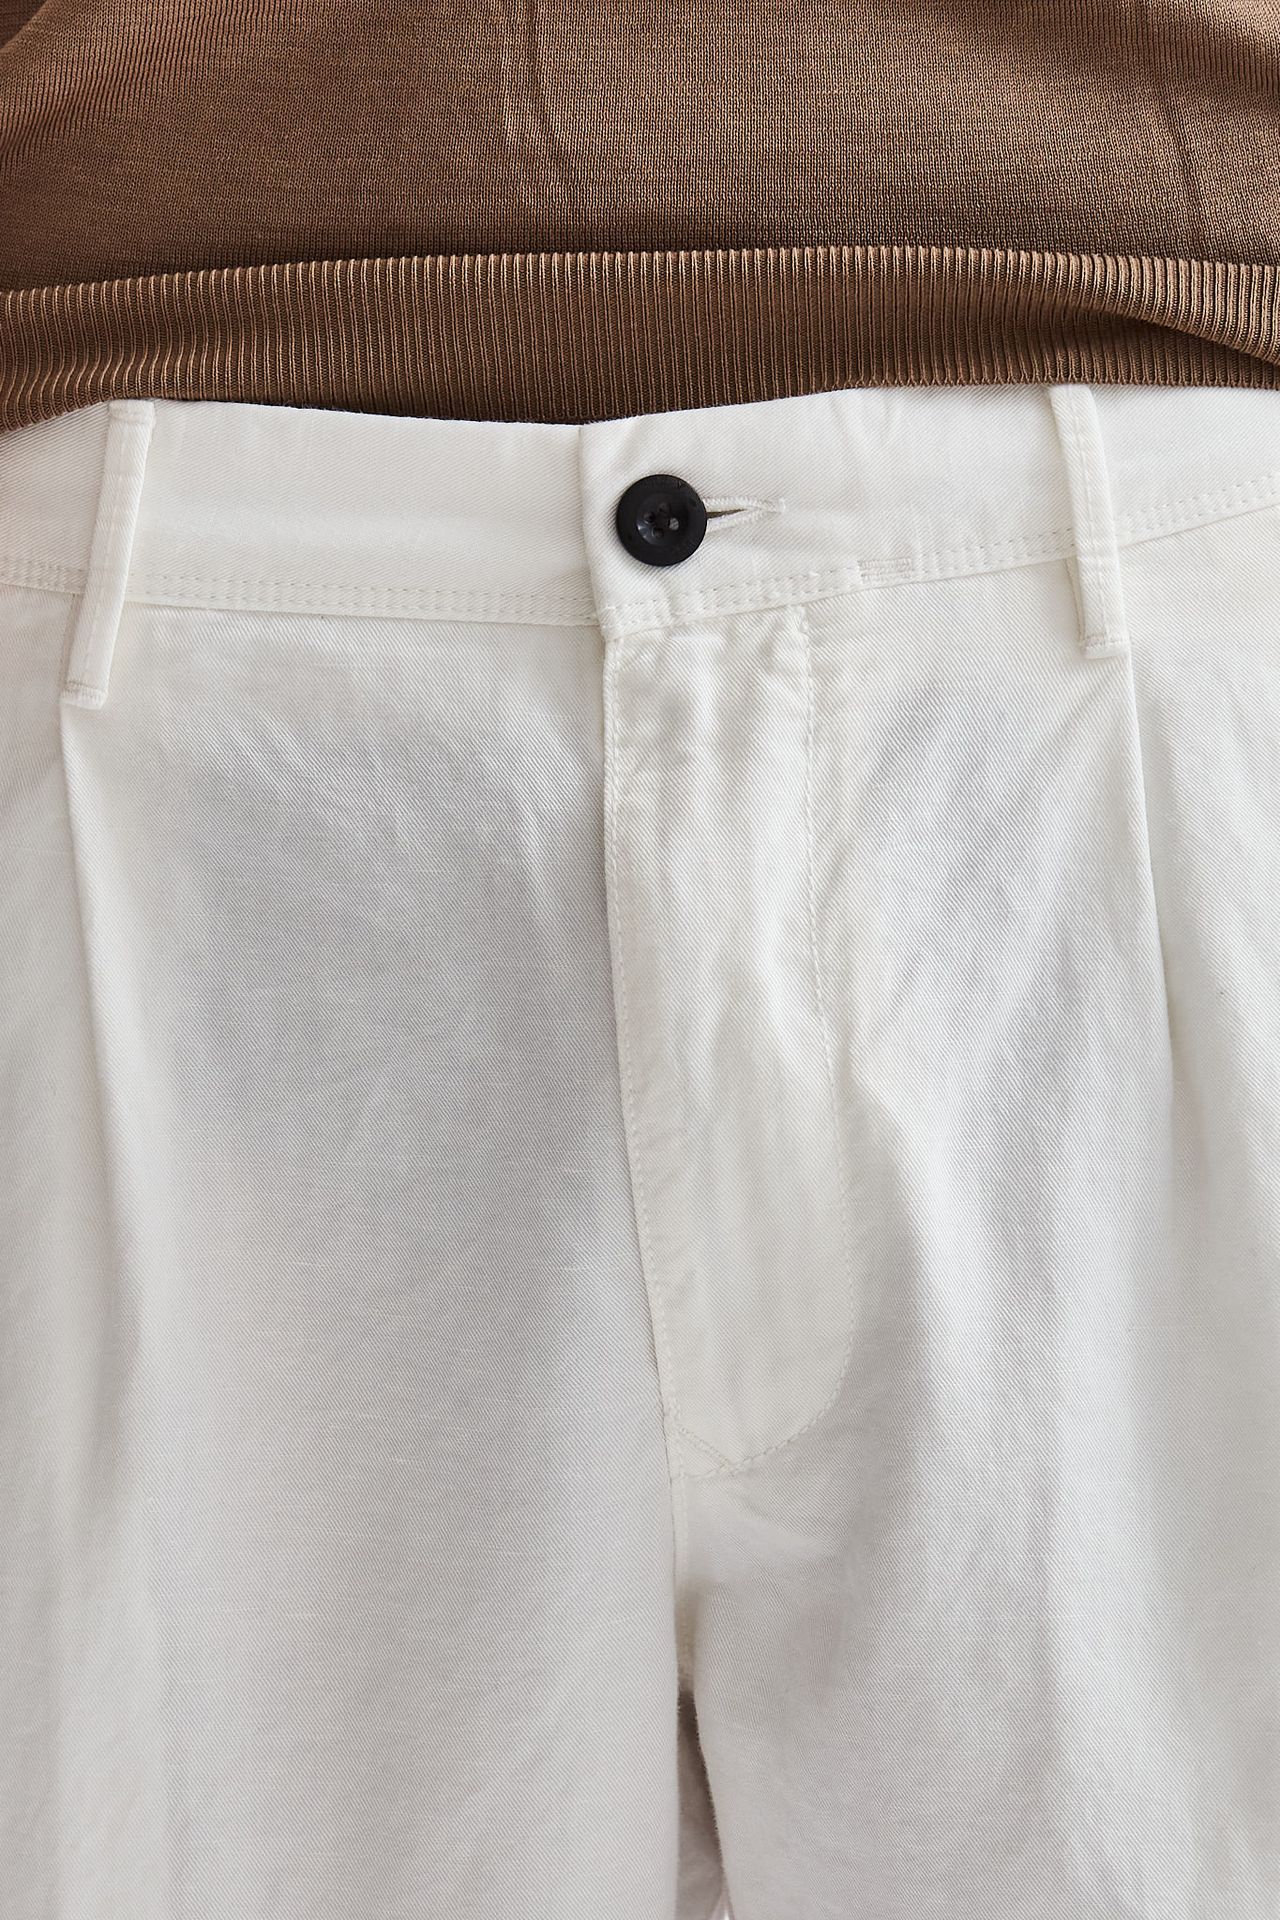 Pantalone in lino/cotone bianco